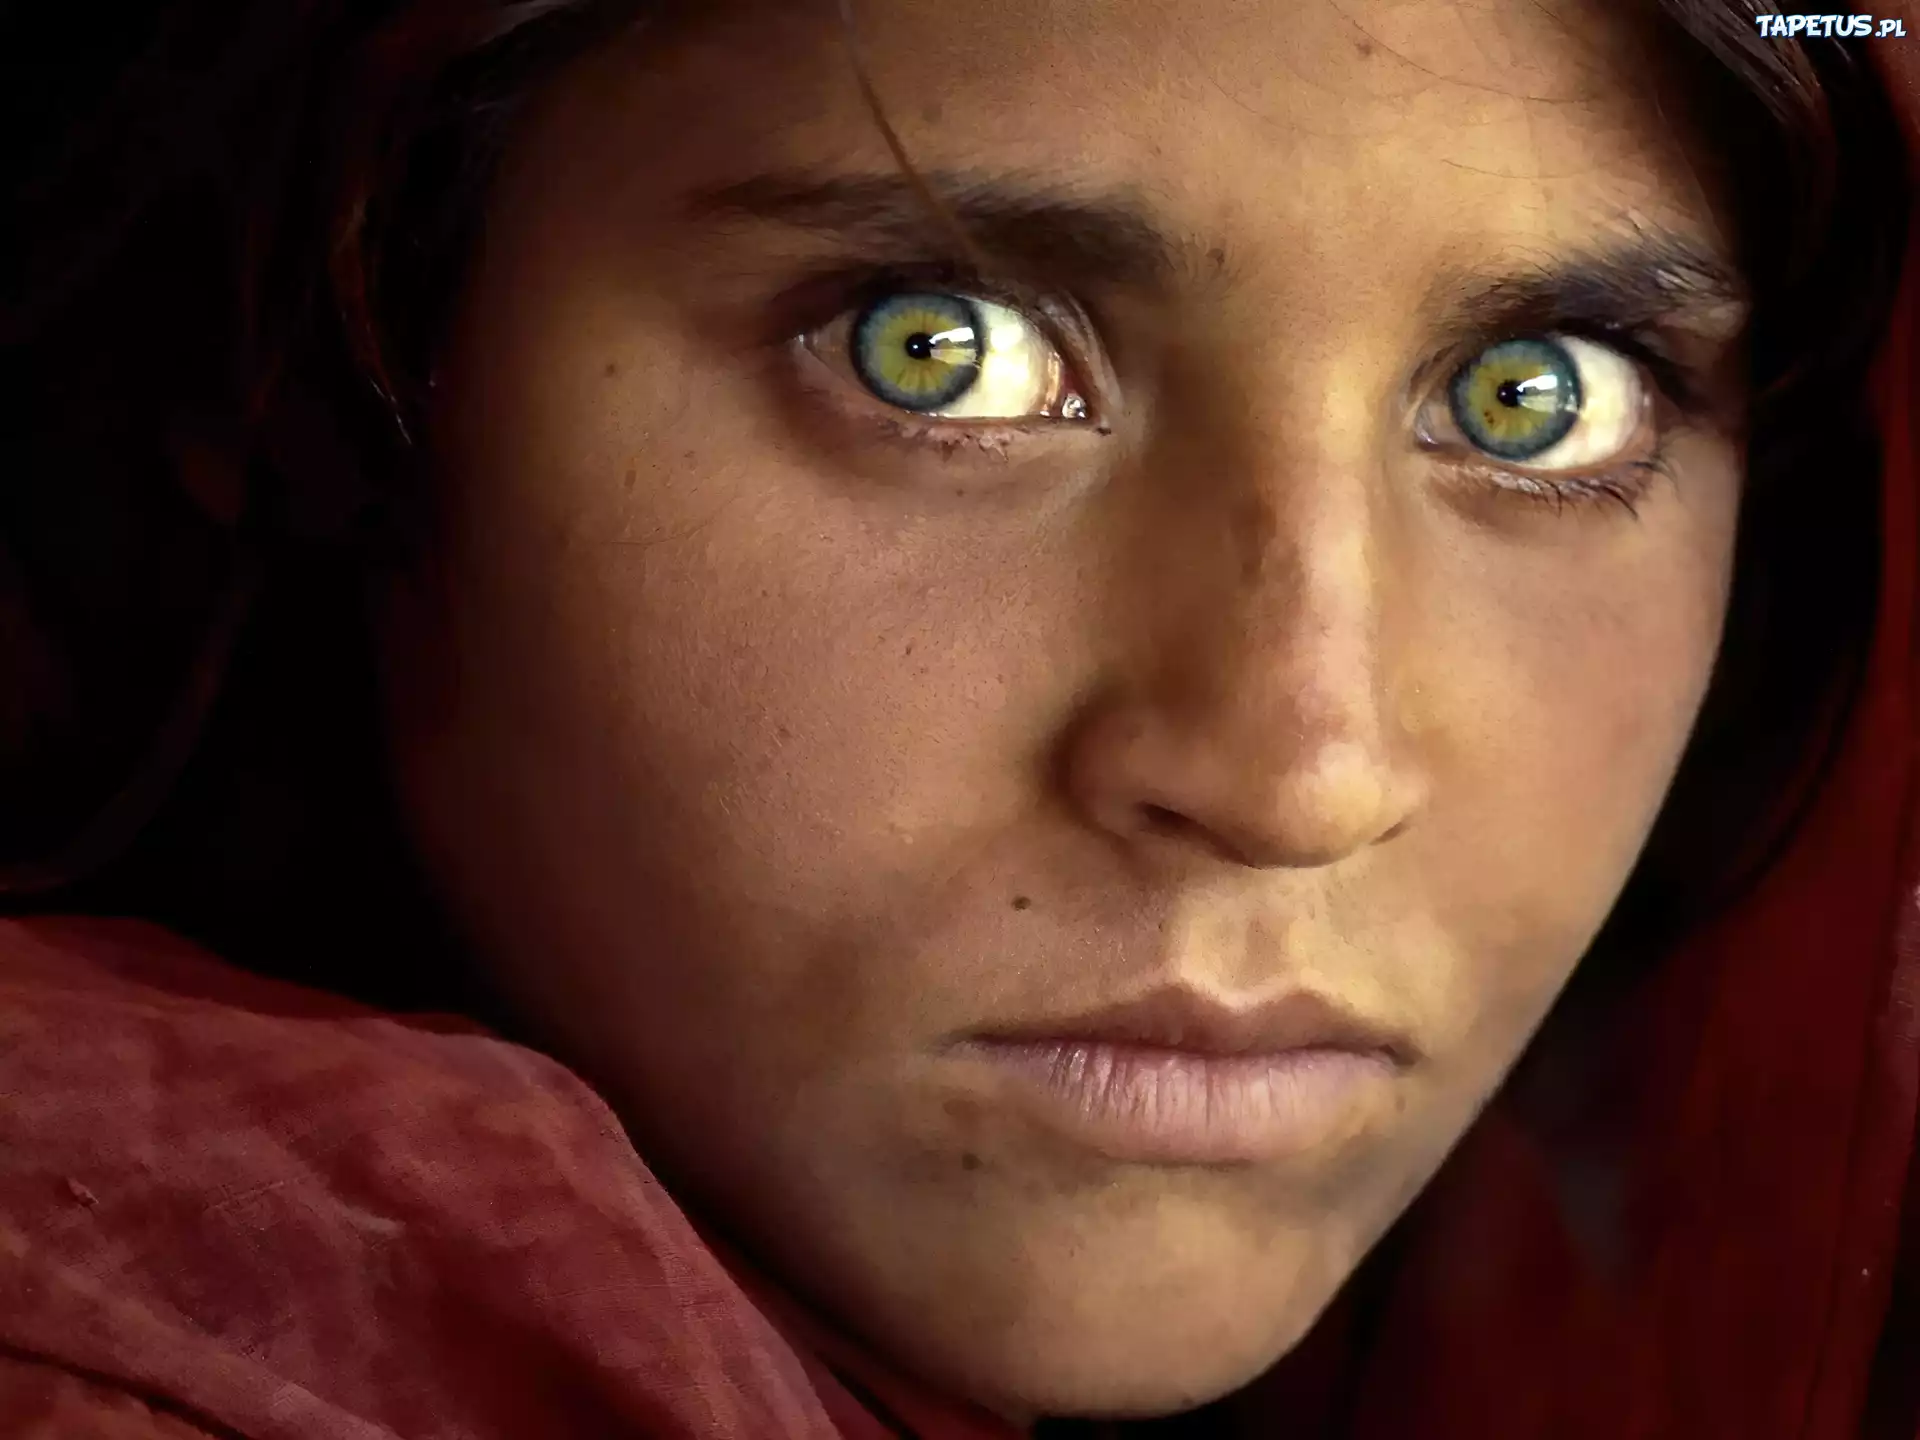 Красивые глаза в марте. Шарбат Гула 2021. Стив МАККАРРИ Шарбат Гула. Шарбат Гула National Geographic. Стив МАККАРРИ Афганская девочка.